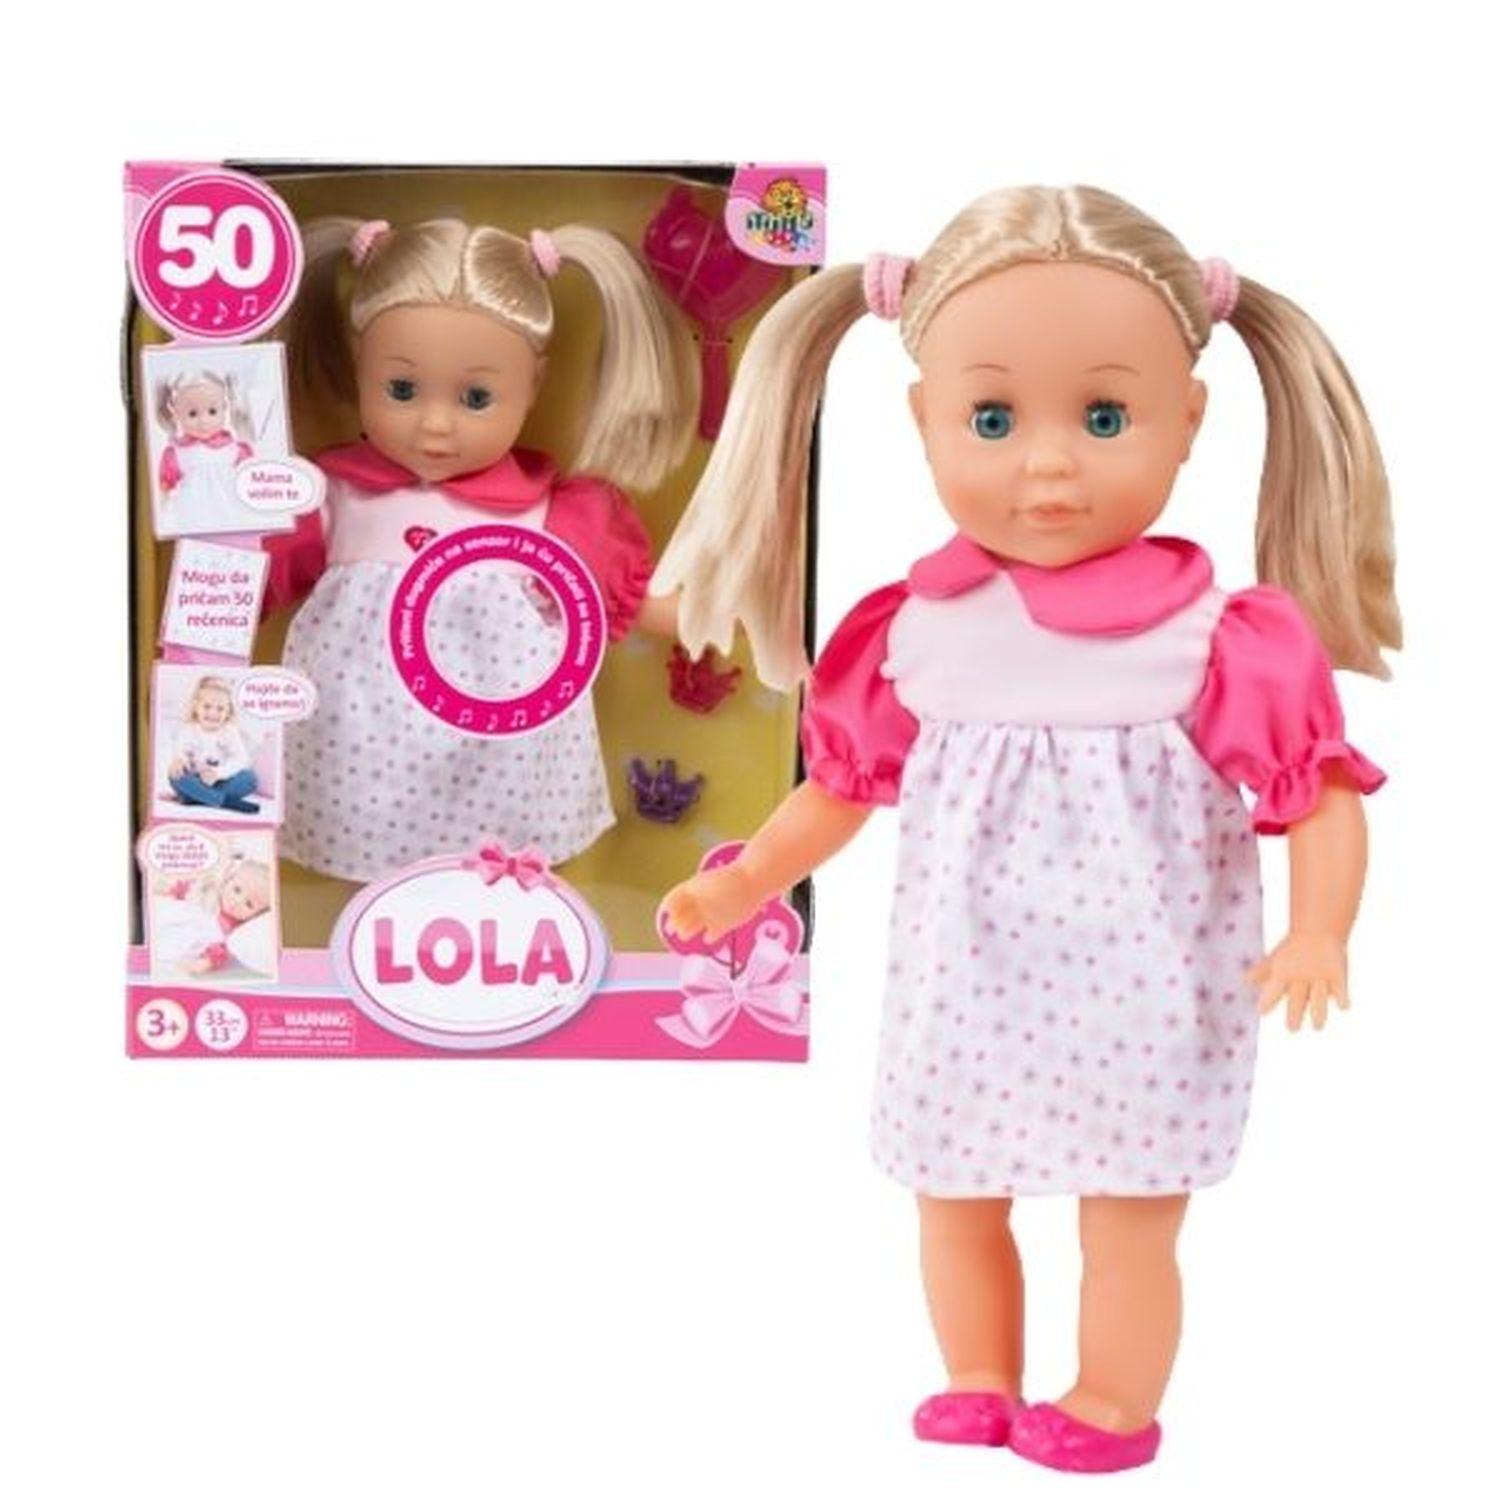 MILLA TOYS Interaktivna lutka Lola sa 50 rečenica